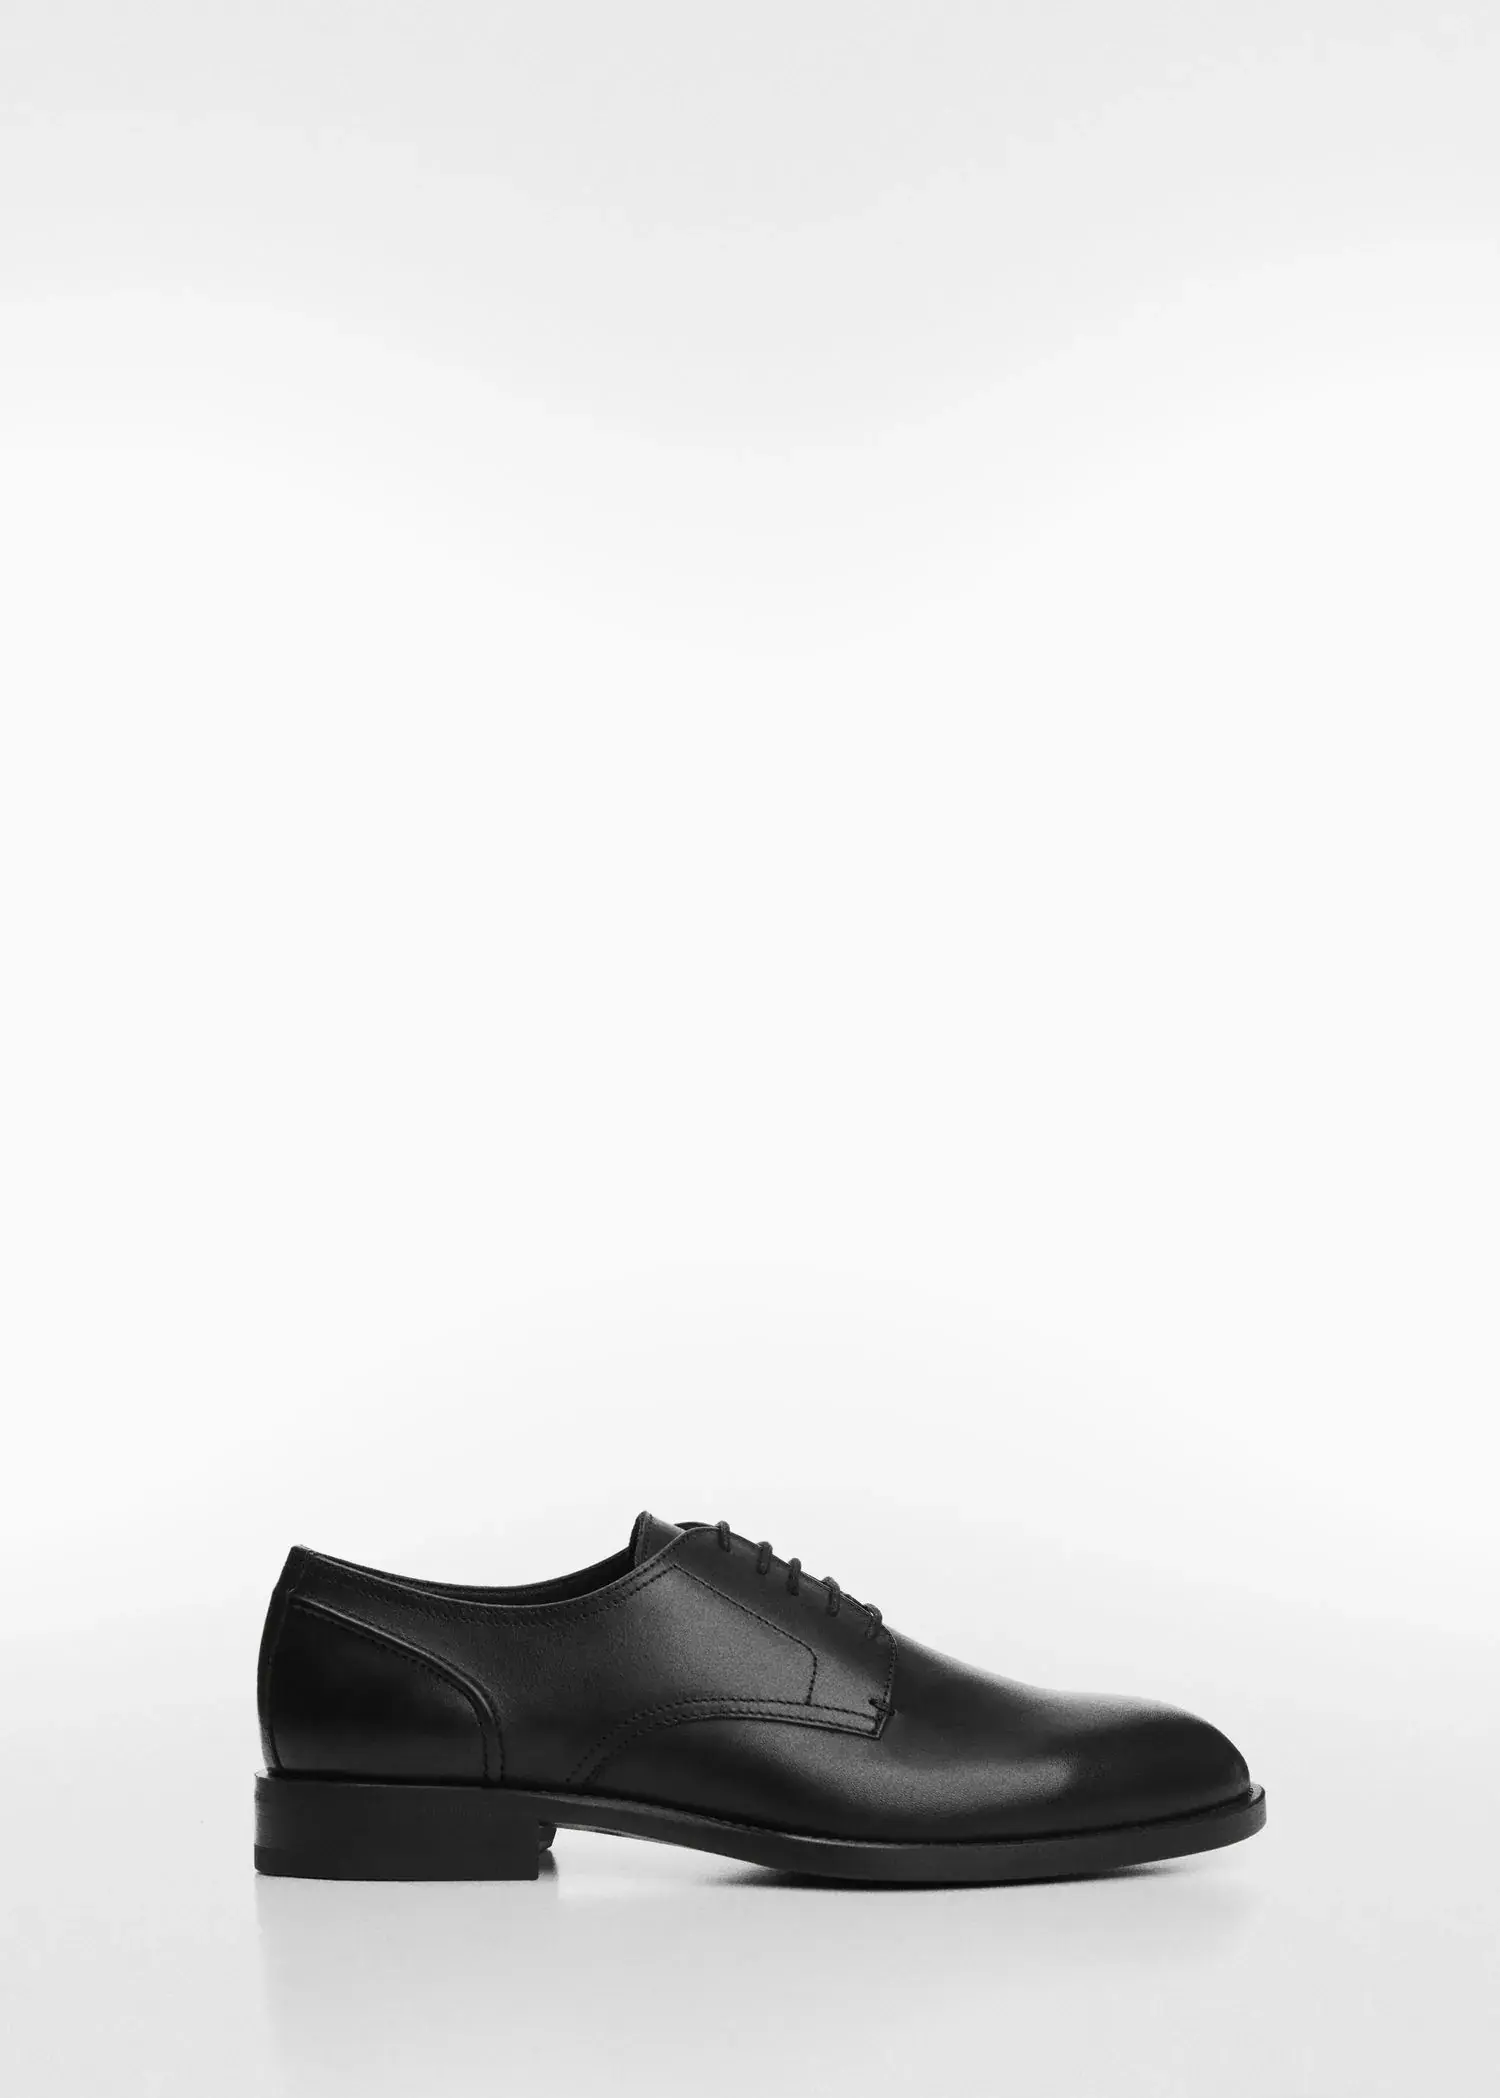 Mango Leather suit shoes. 2